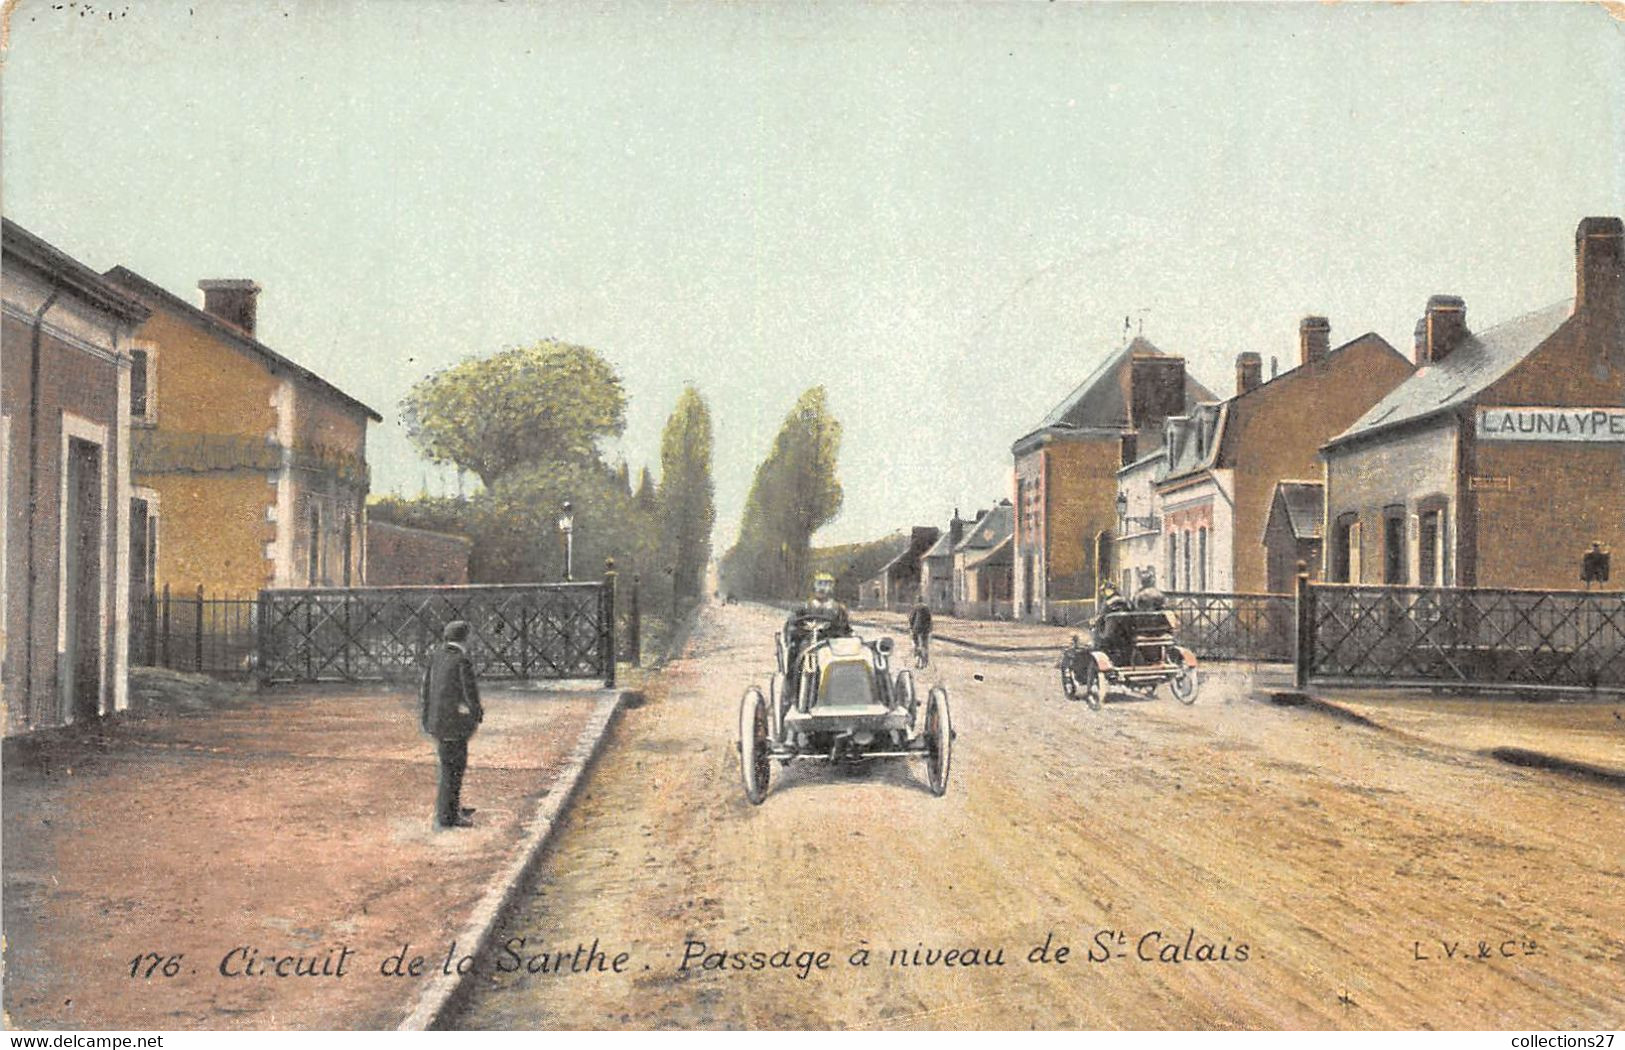 72-SAINT-CALAIS-CIRCUIT DE LA SARTHE- PASSAGE A NIVEAU DE ST-CALAIS - Saint Calais